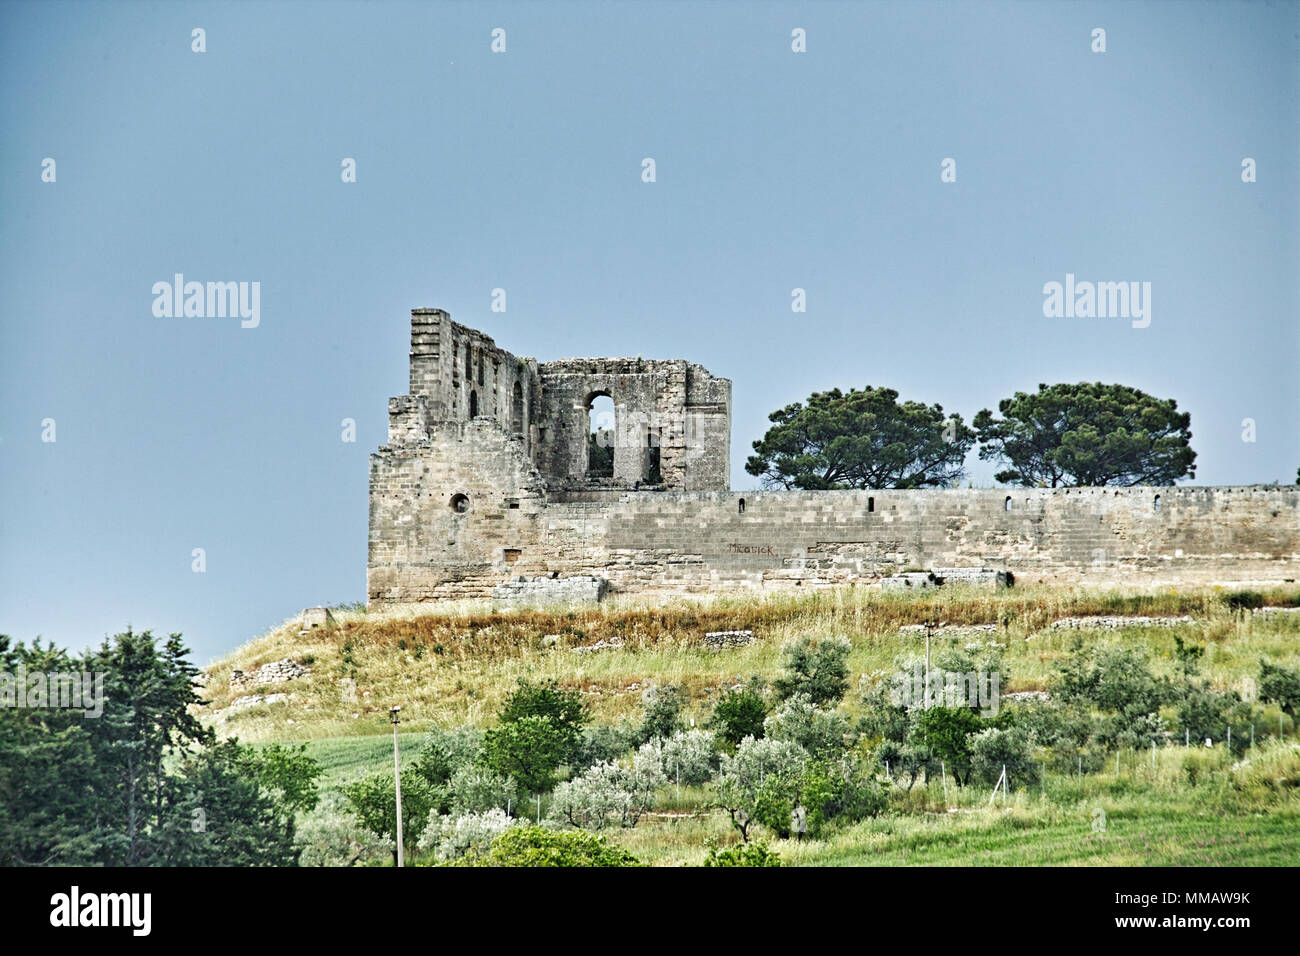 Medieval castle, Gravina in Puglia. Castello Svevo di Gravina Stock Photo